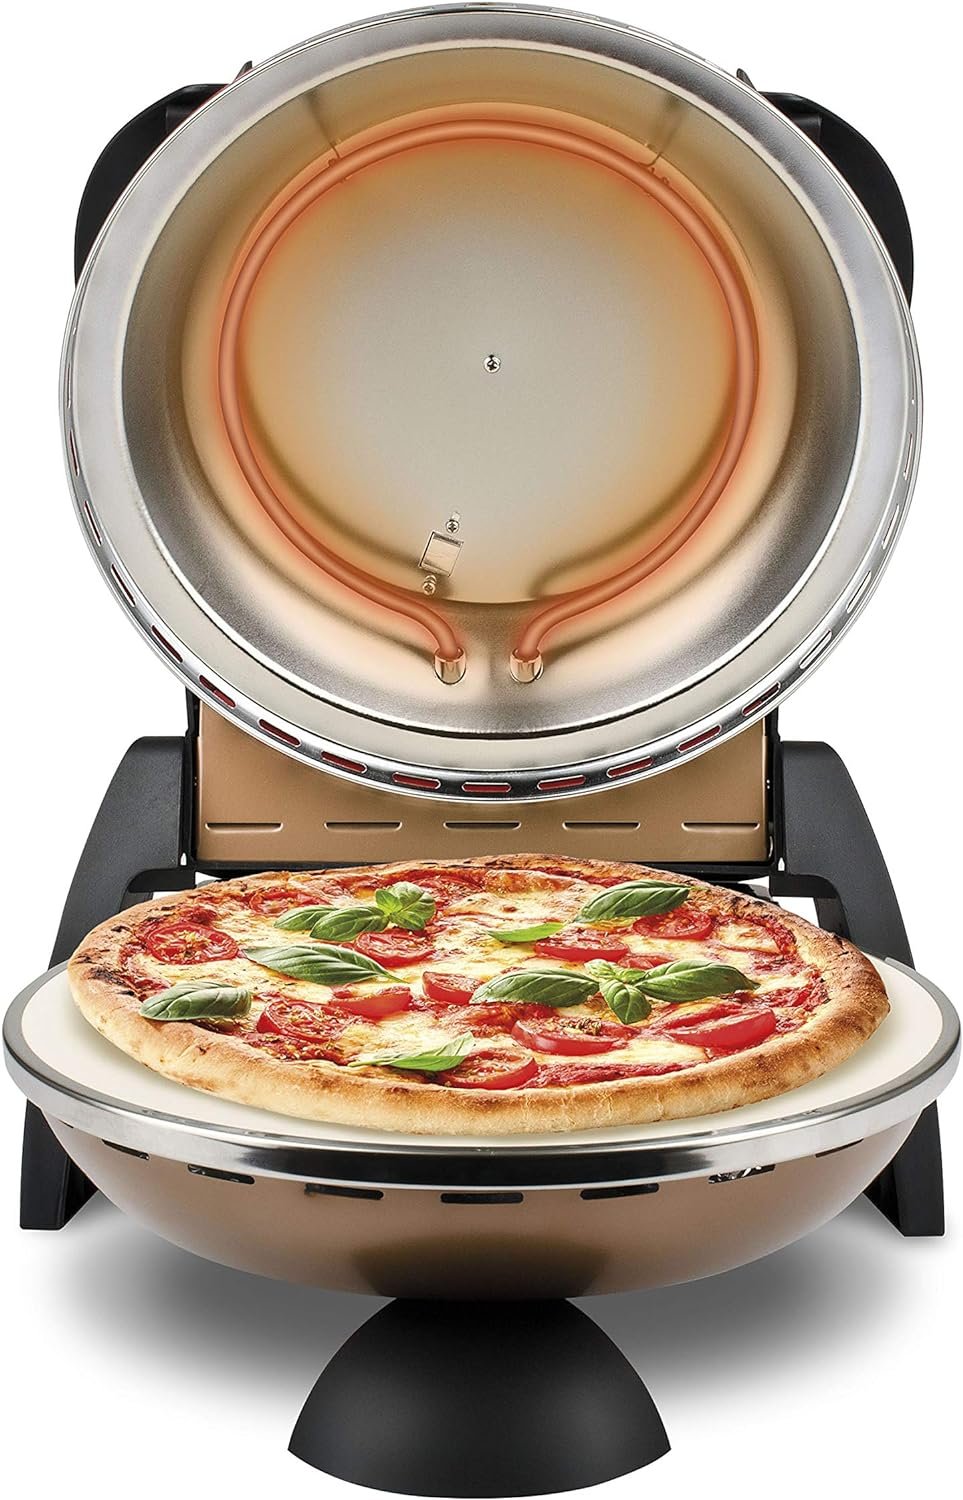 Уред за пица G3Ferrari G10006 1200W 400°C пещ за пица пицарка многофункционална фурна